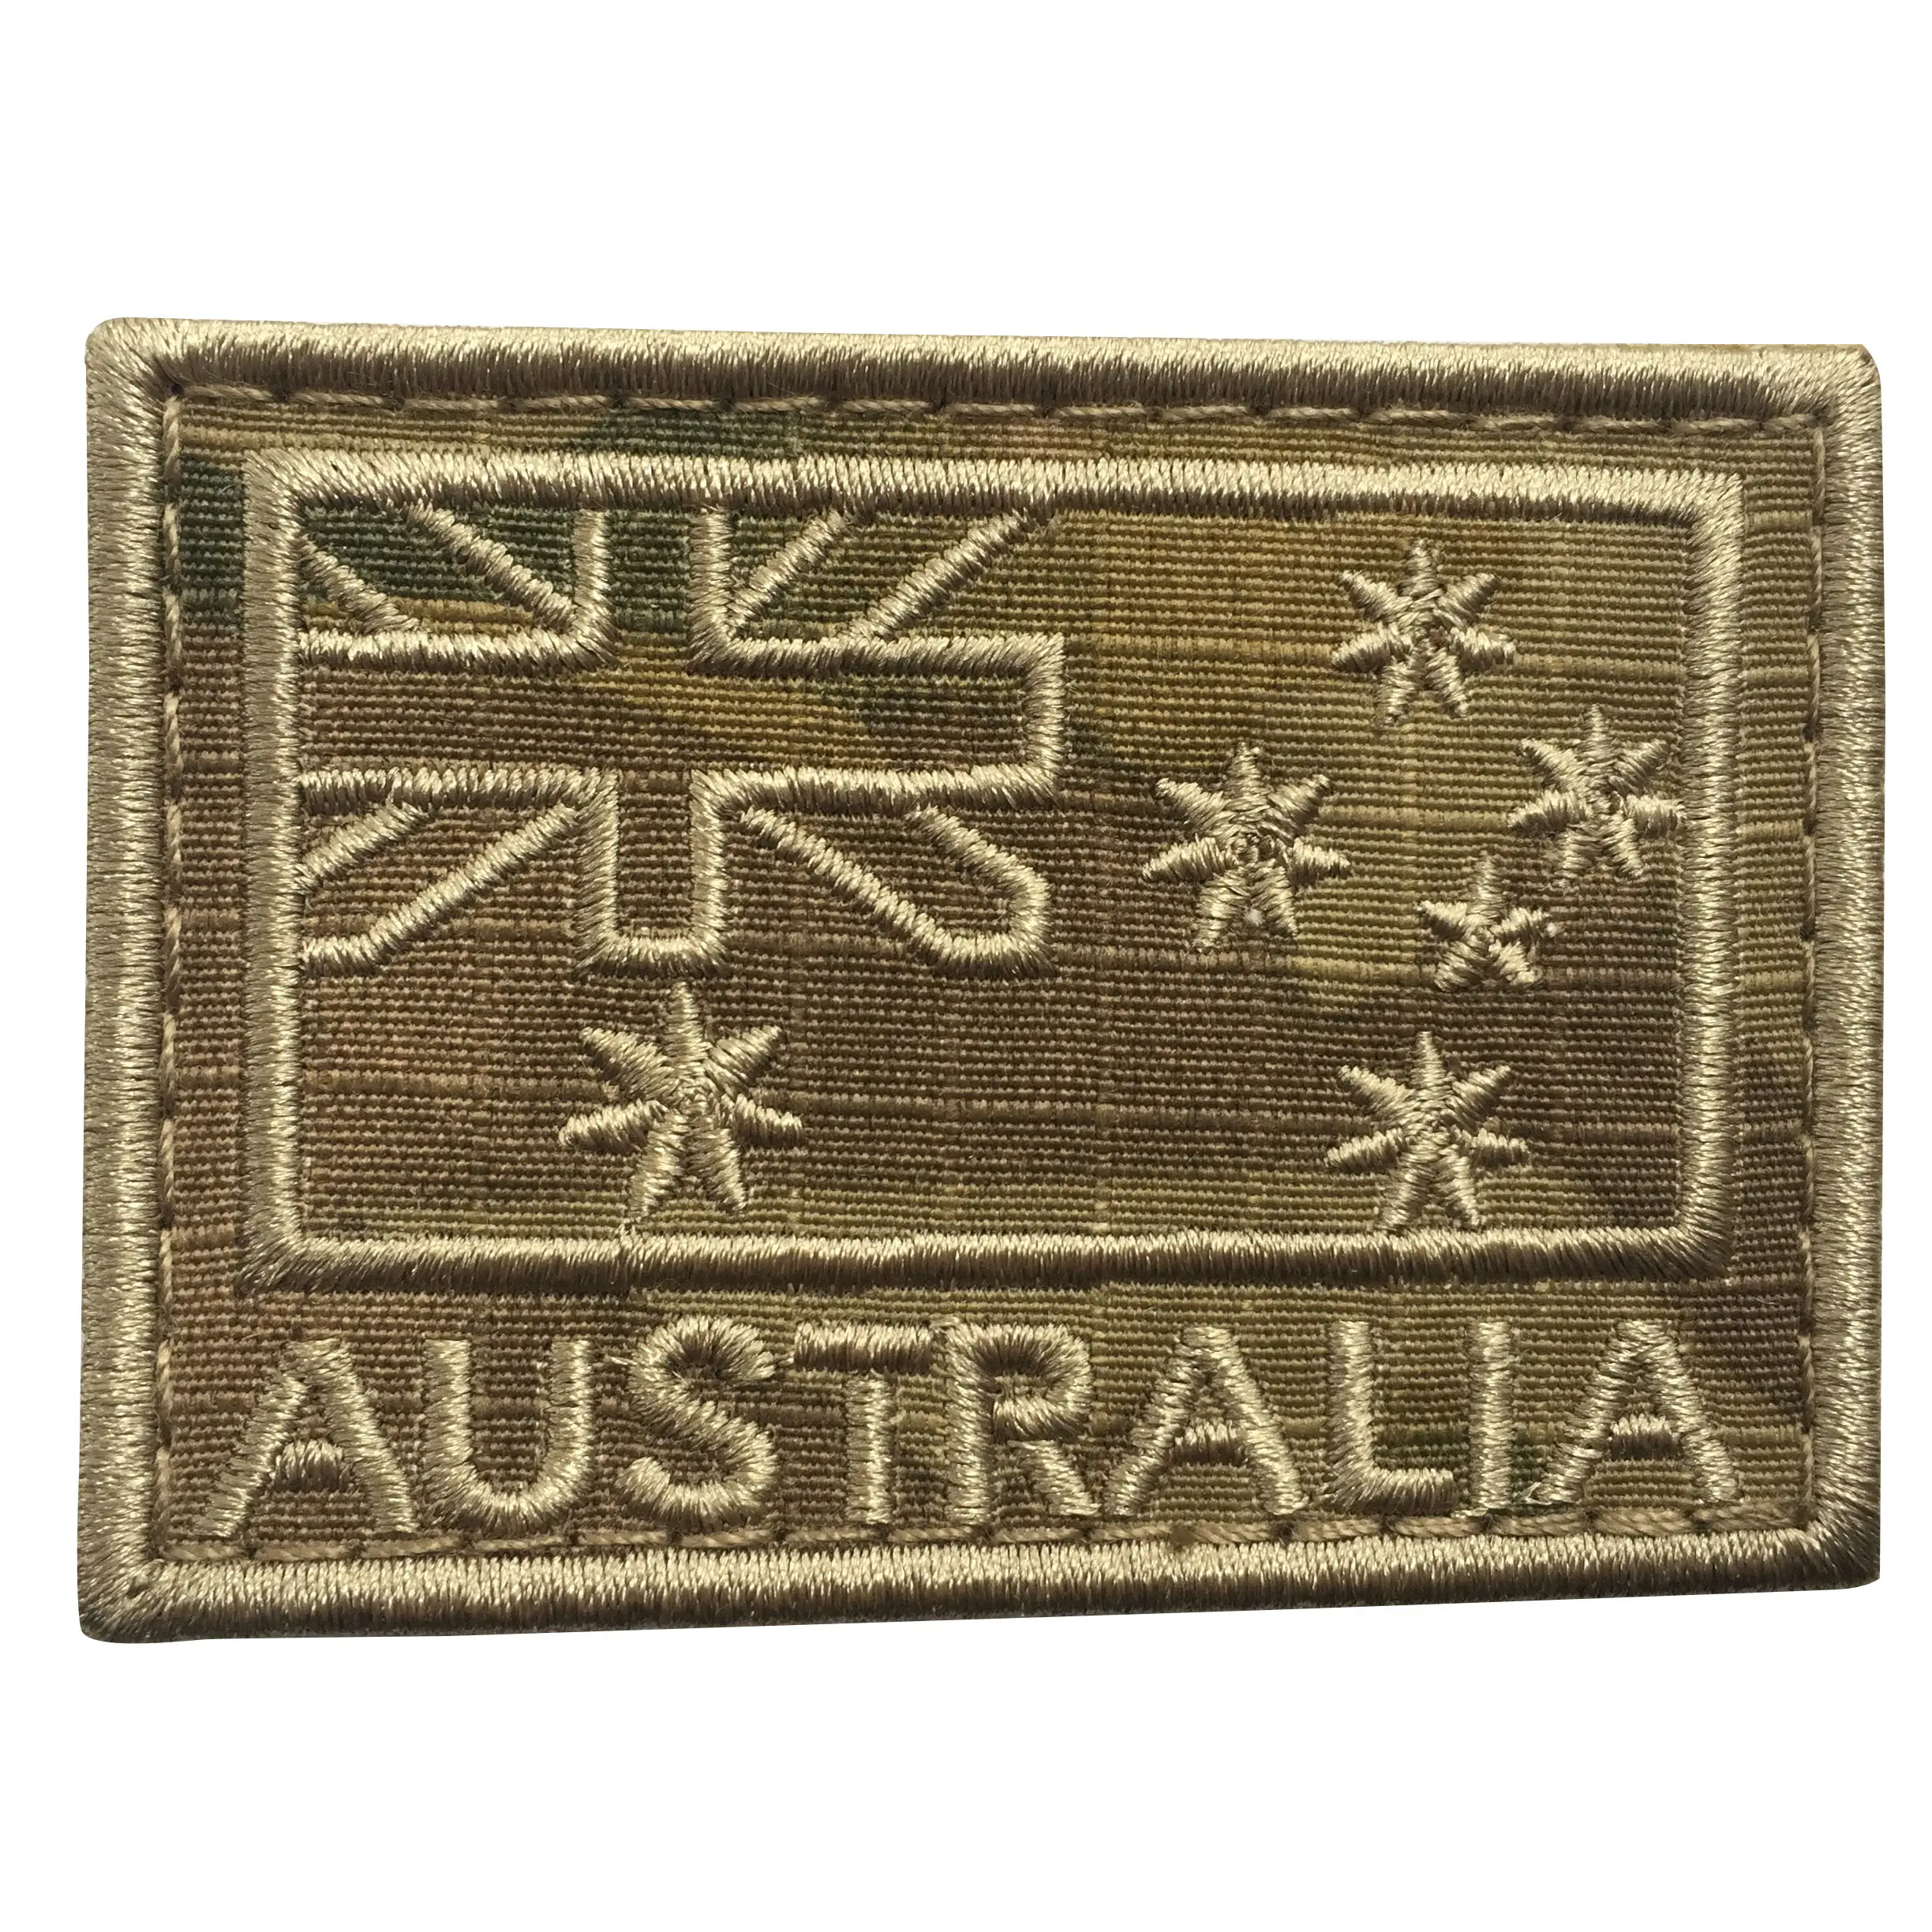 Avustralya bayrağı renk 2.95*1.96 inç taktik abd abd PVC bayrak cırt cırt üniforma yama alt Dued bayrağı yama